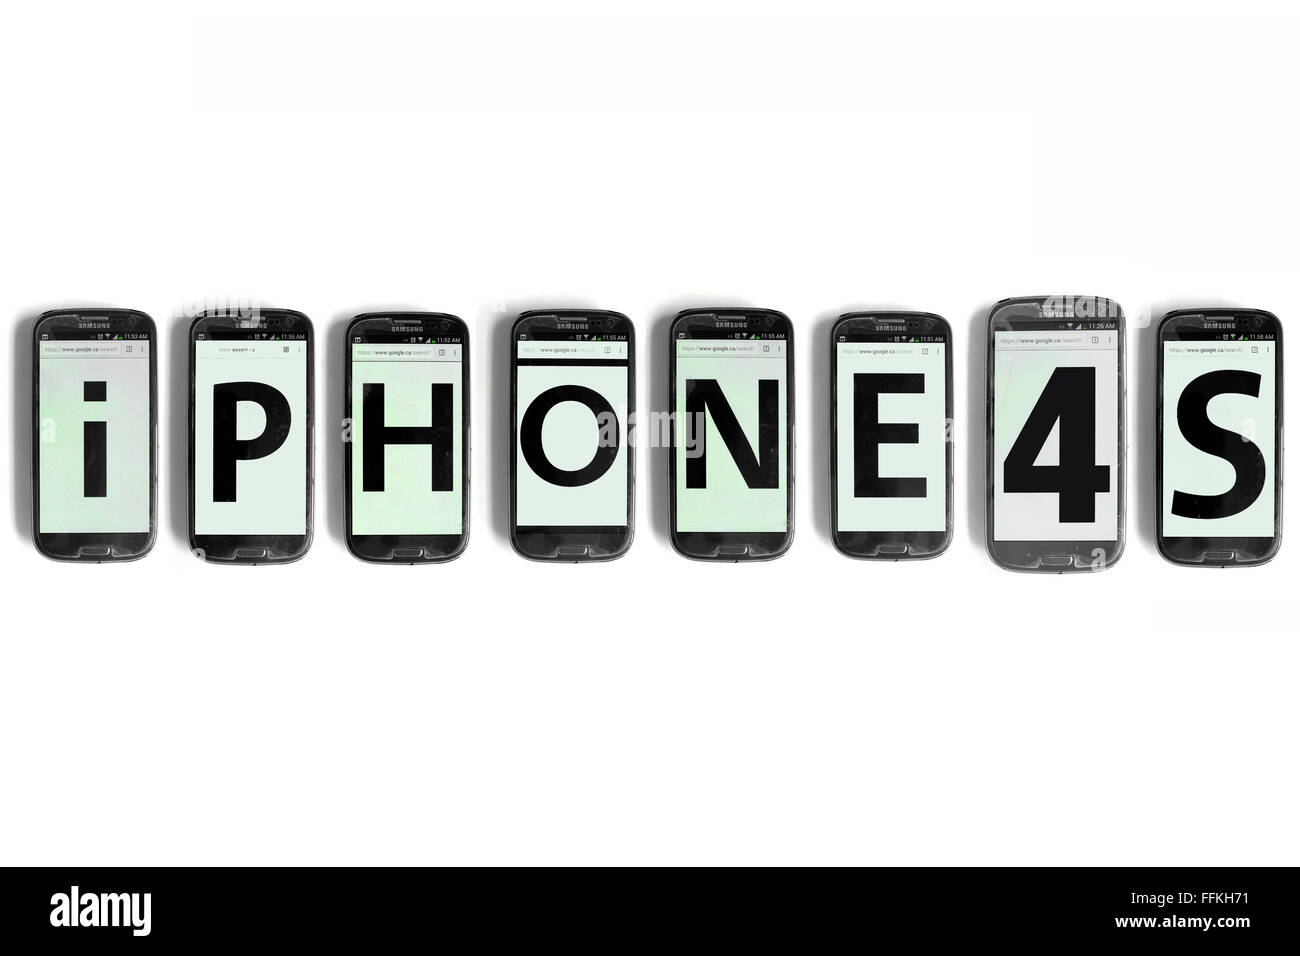 IPhone4s scritto su schermate dello smartphone fotografati contro uno sfondo bianco. Foto Stock